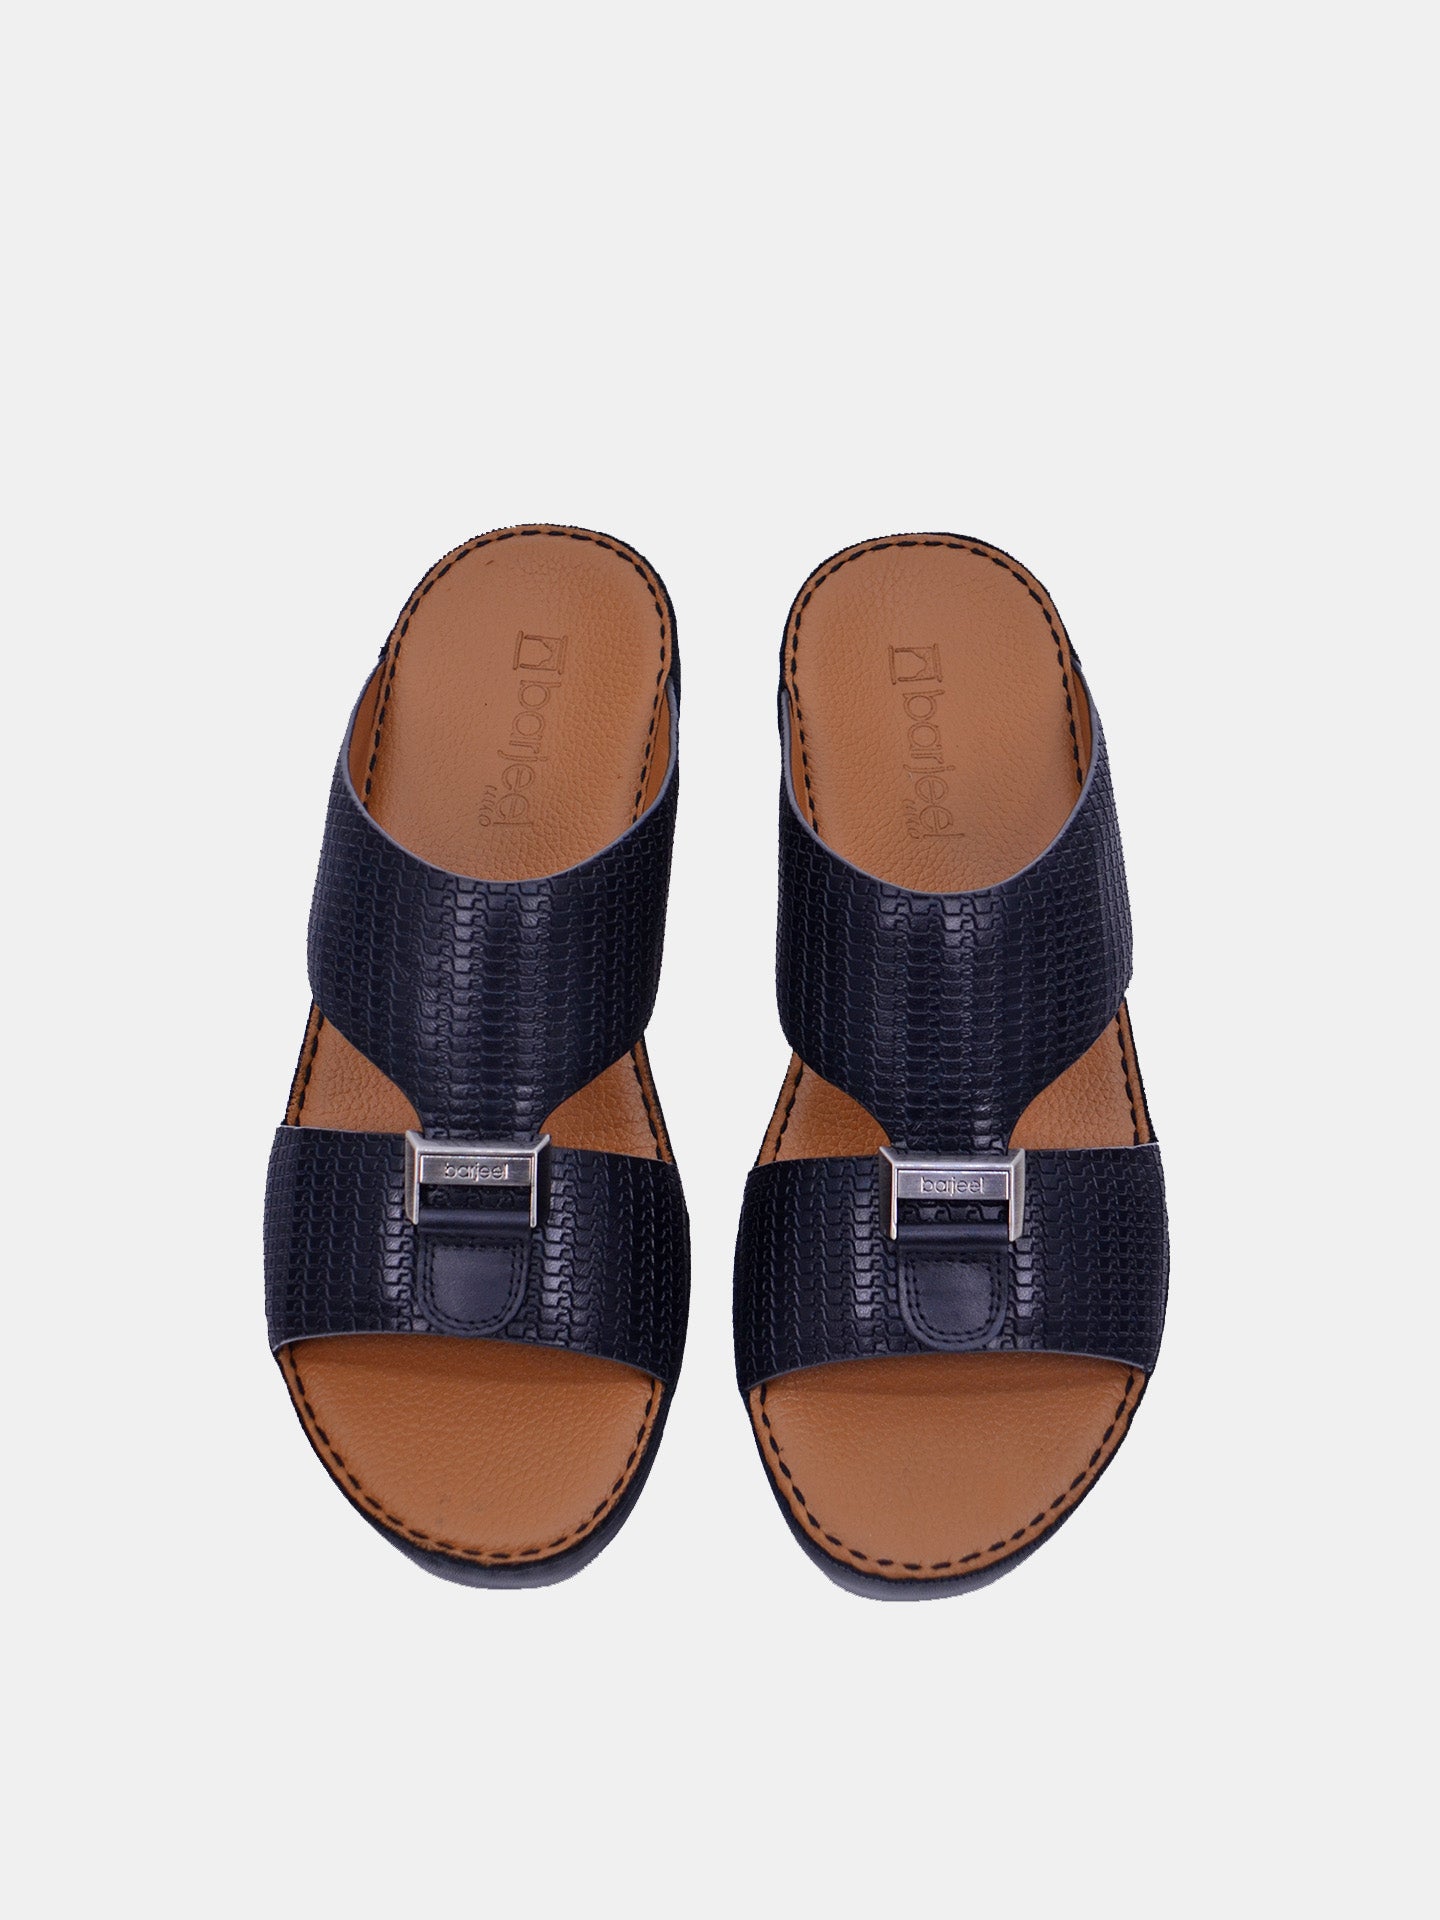 Barjeel Uno BSP1-54 Boys Arabic Sandals #color_Black